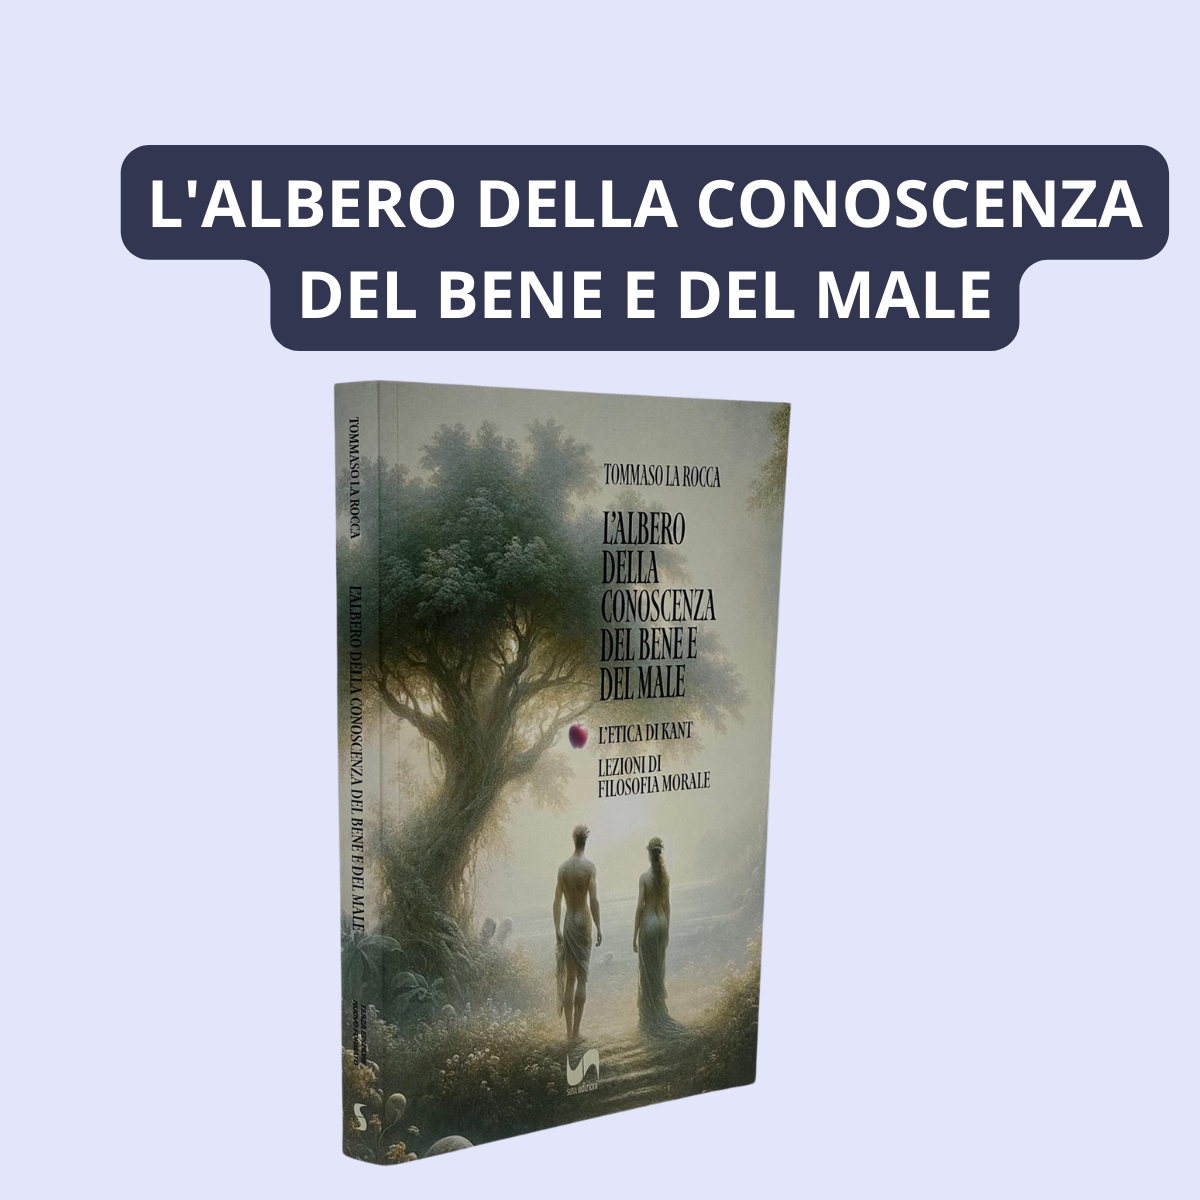 L'ALBERO DELLA CONOSCENZA DEL BENE E DEL MALE (III Edizione) L'ETICA DI KANT. LEZIONI DI FILOSOFIA